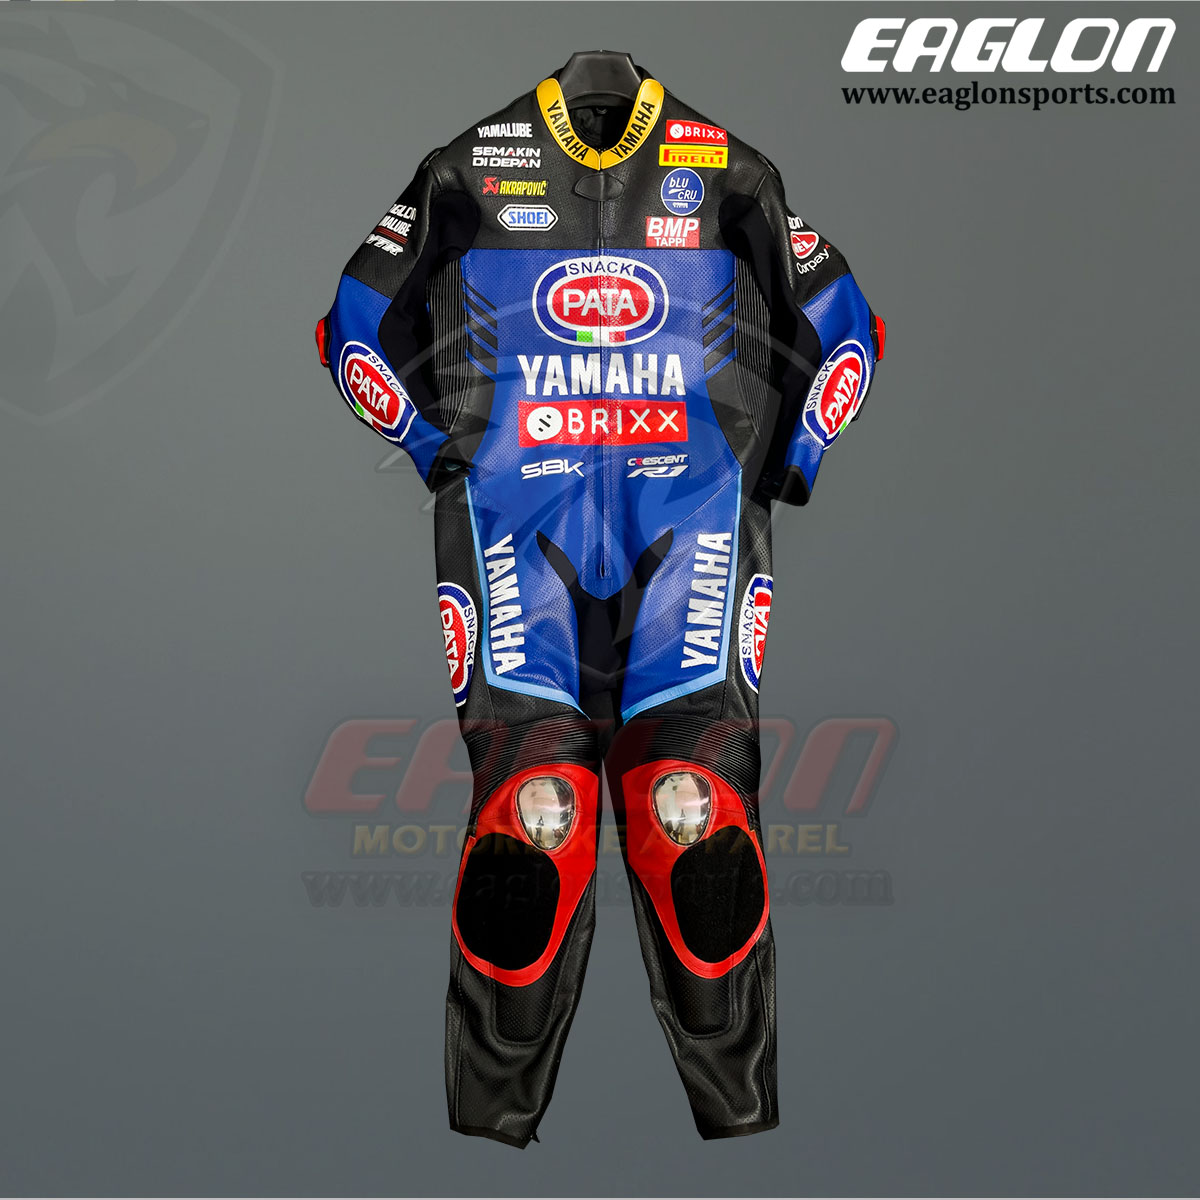 Toprak-Razgatlioglu-Pata-Yamaha-SBK-2022-Race-Suit